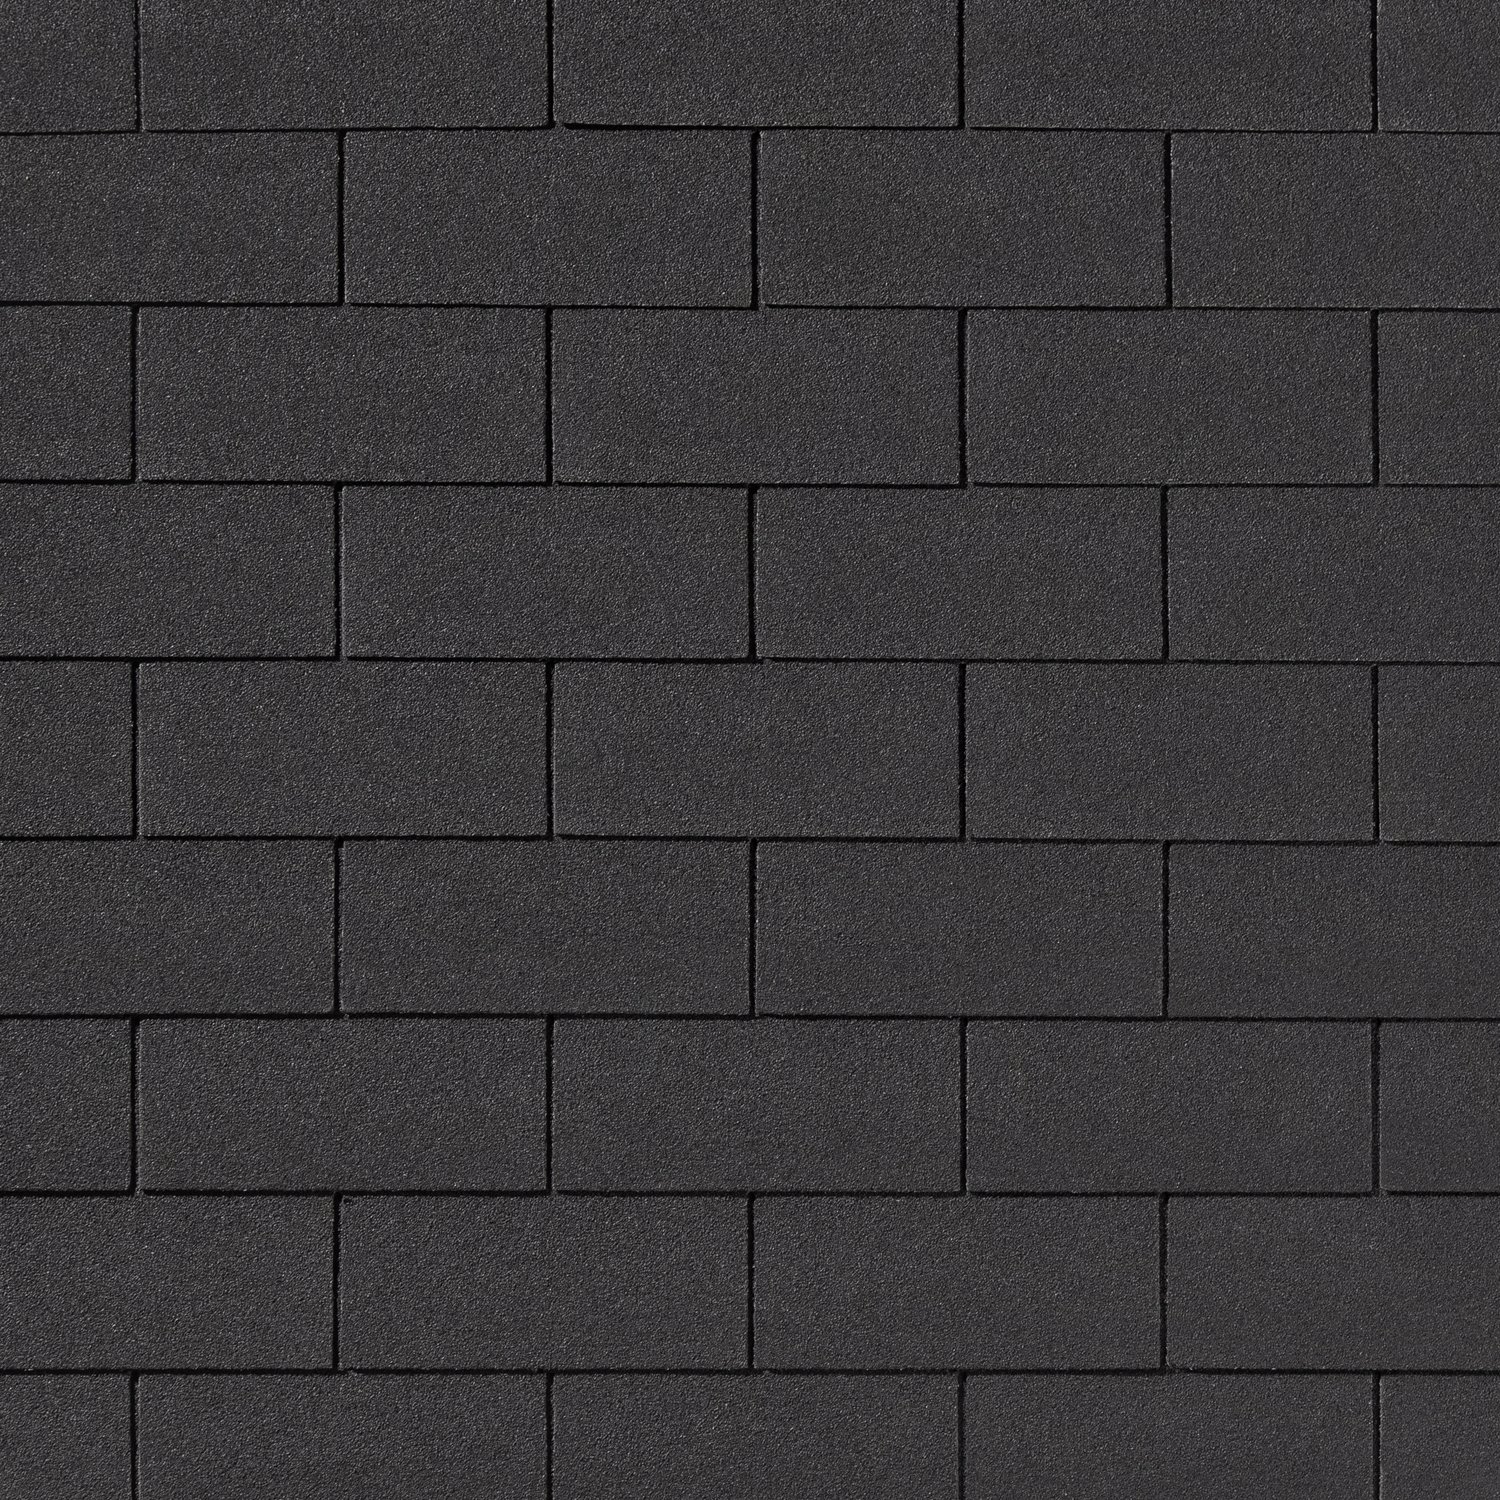 Гибкая черепица Quiet tile Brick черный 3м2, чёрный